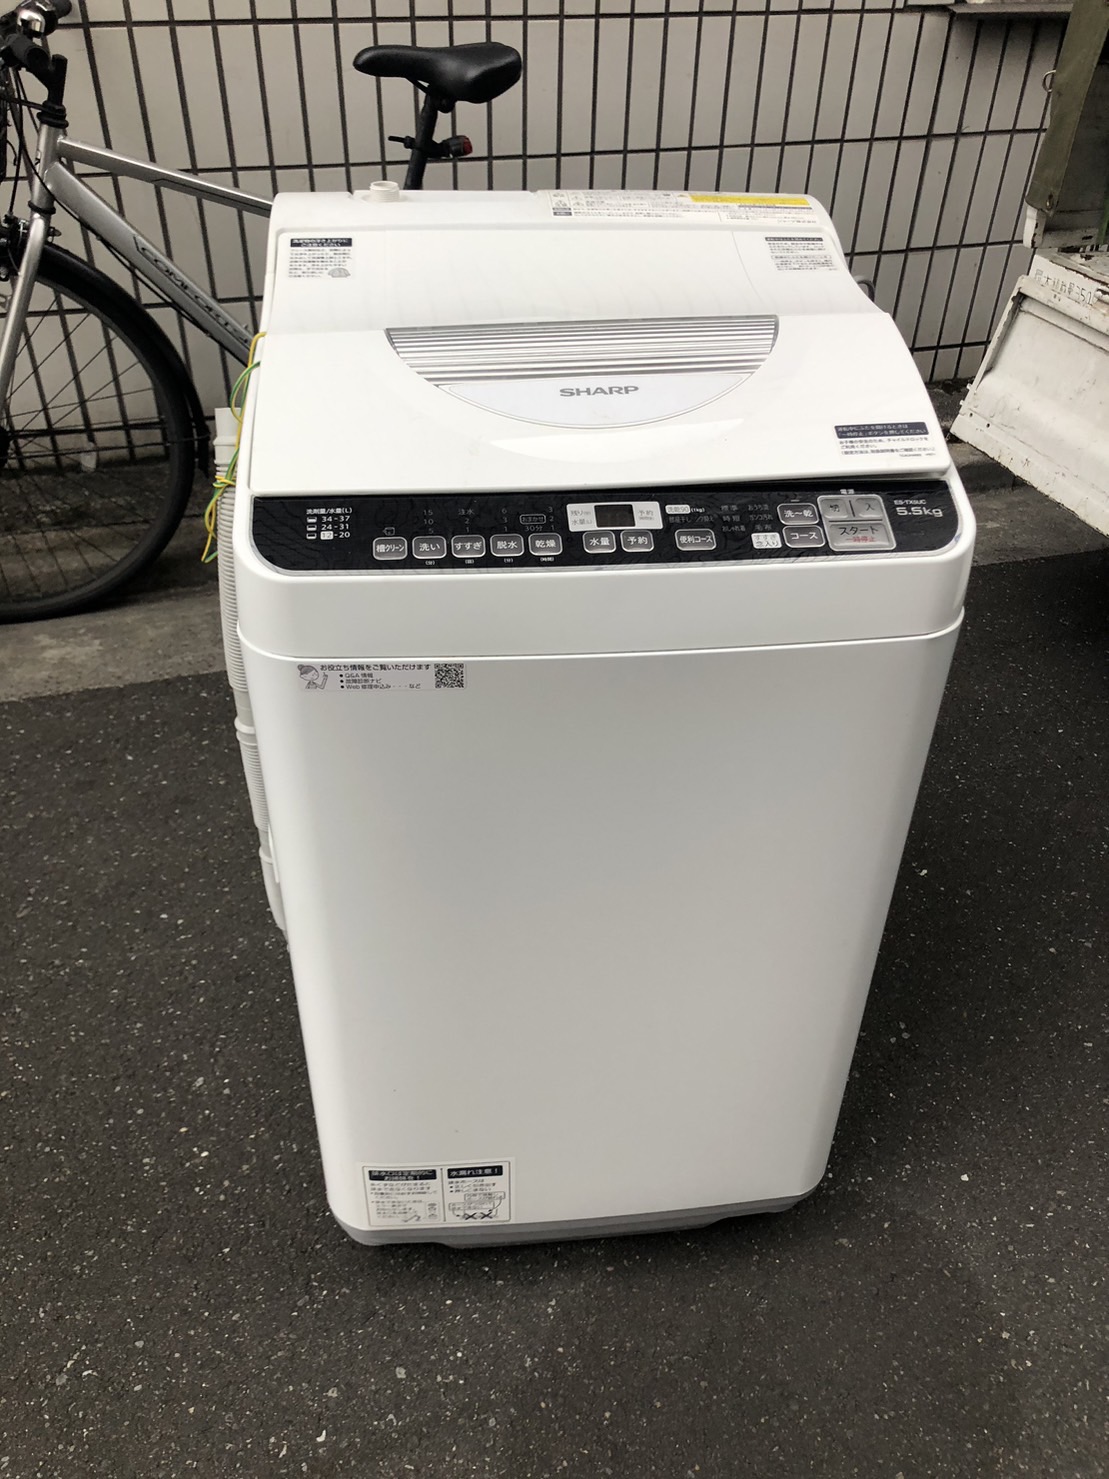 シャープ製の洗濯機「ES-TX5UC-W」